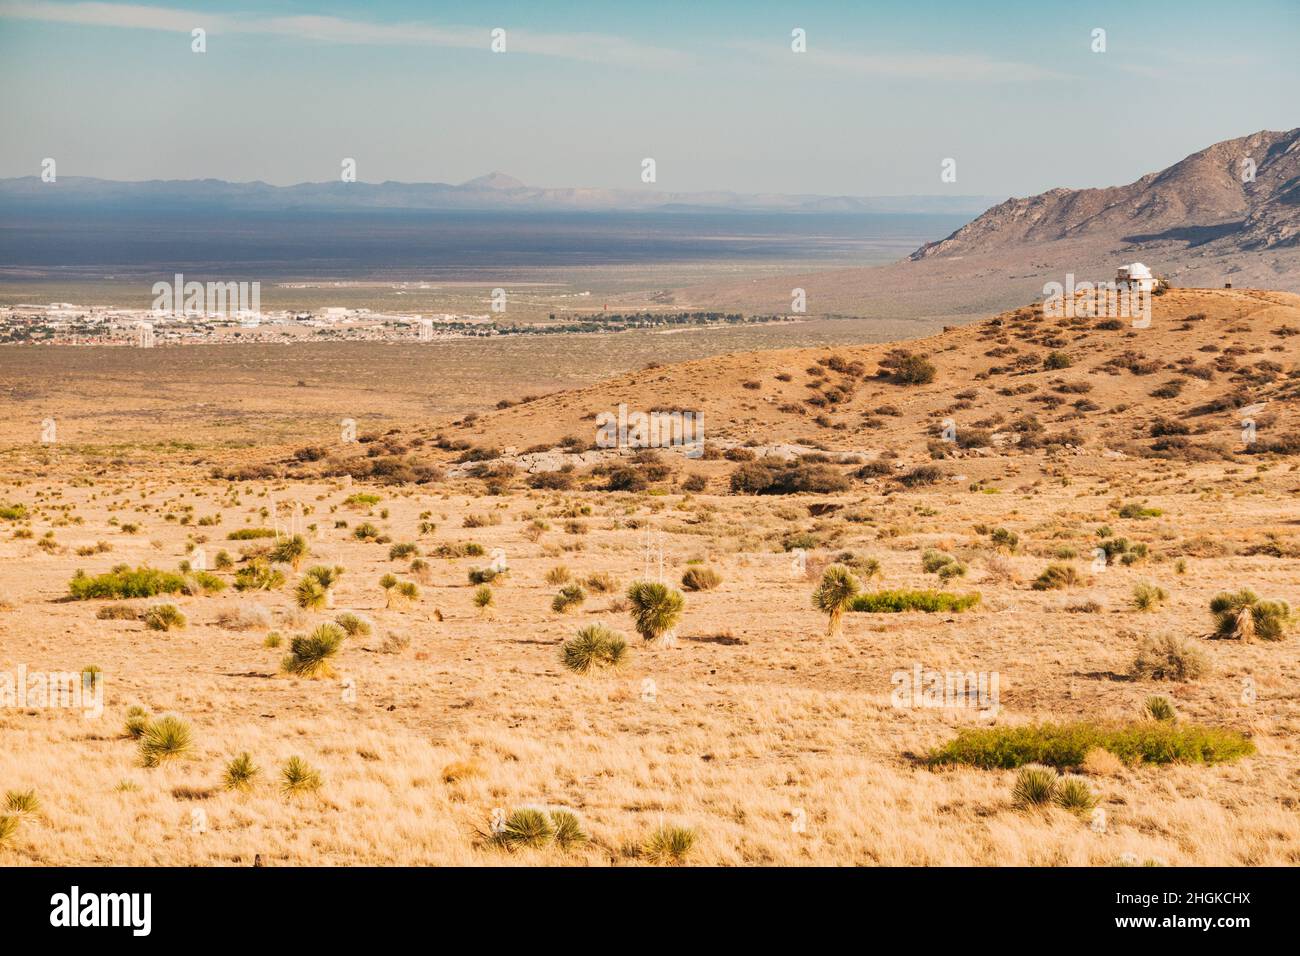 Das Township der White Sands Missile Range, ein Testgelände der US-Armee, in New Mexico, USA, von der Autobahn aus gesehen Stockfoto